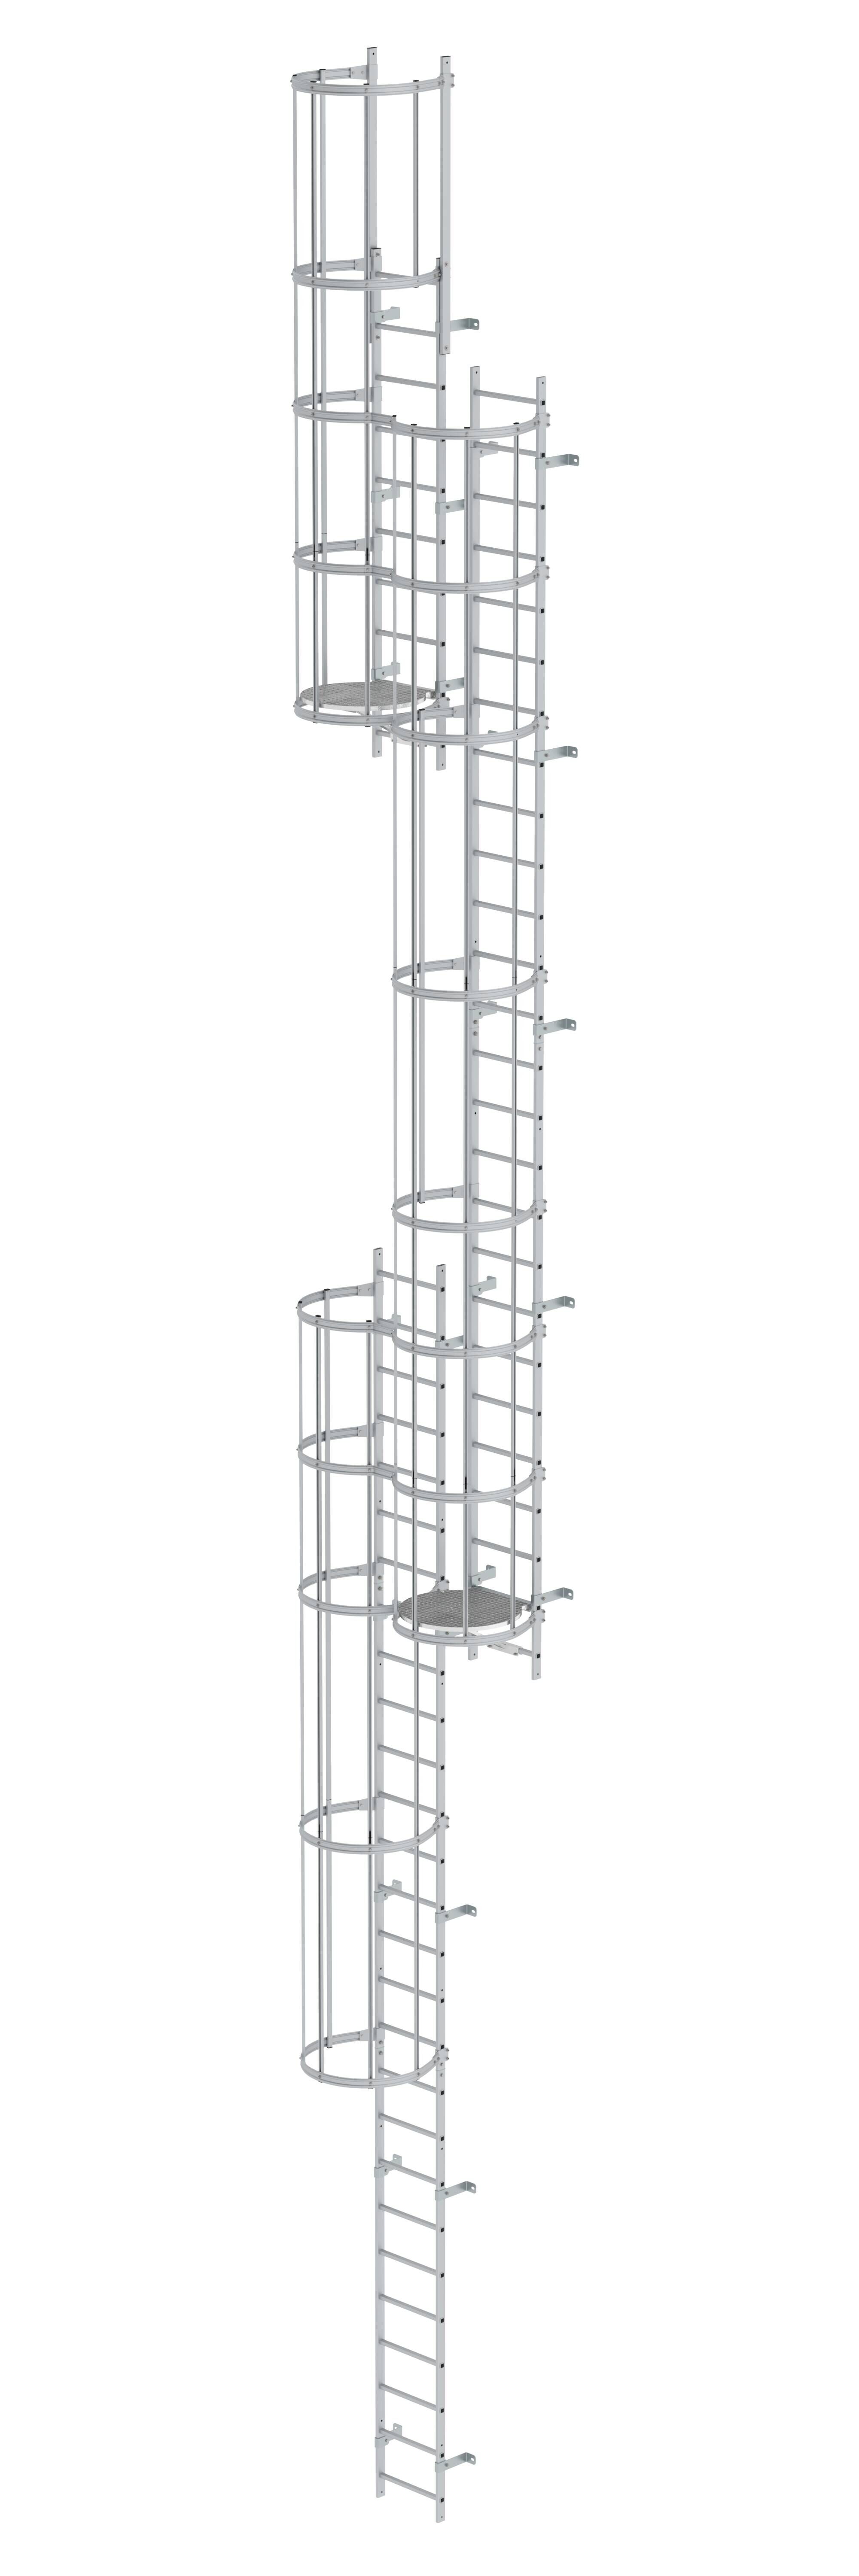 Mehrzügige Steigleiter mit Rückenschutz (Notleiter) Aluminium eloxiert 14,36m